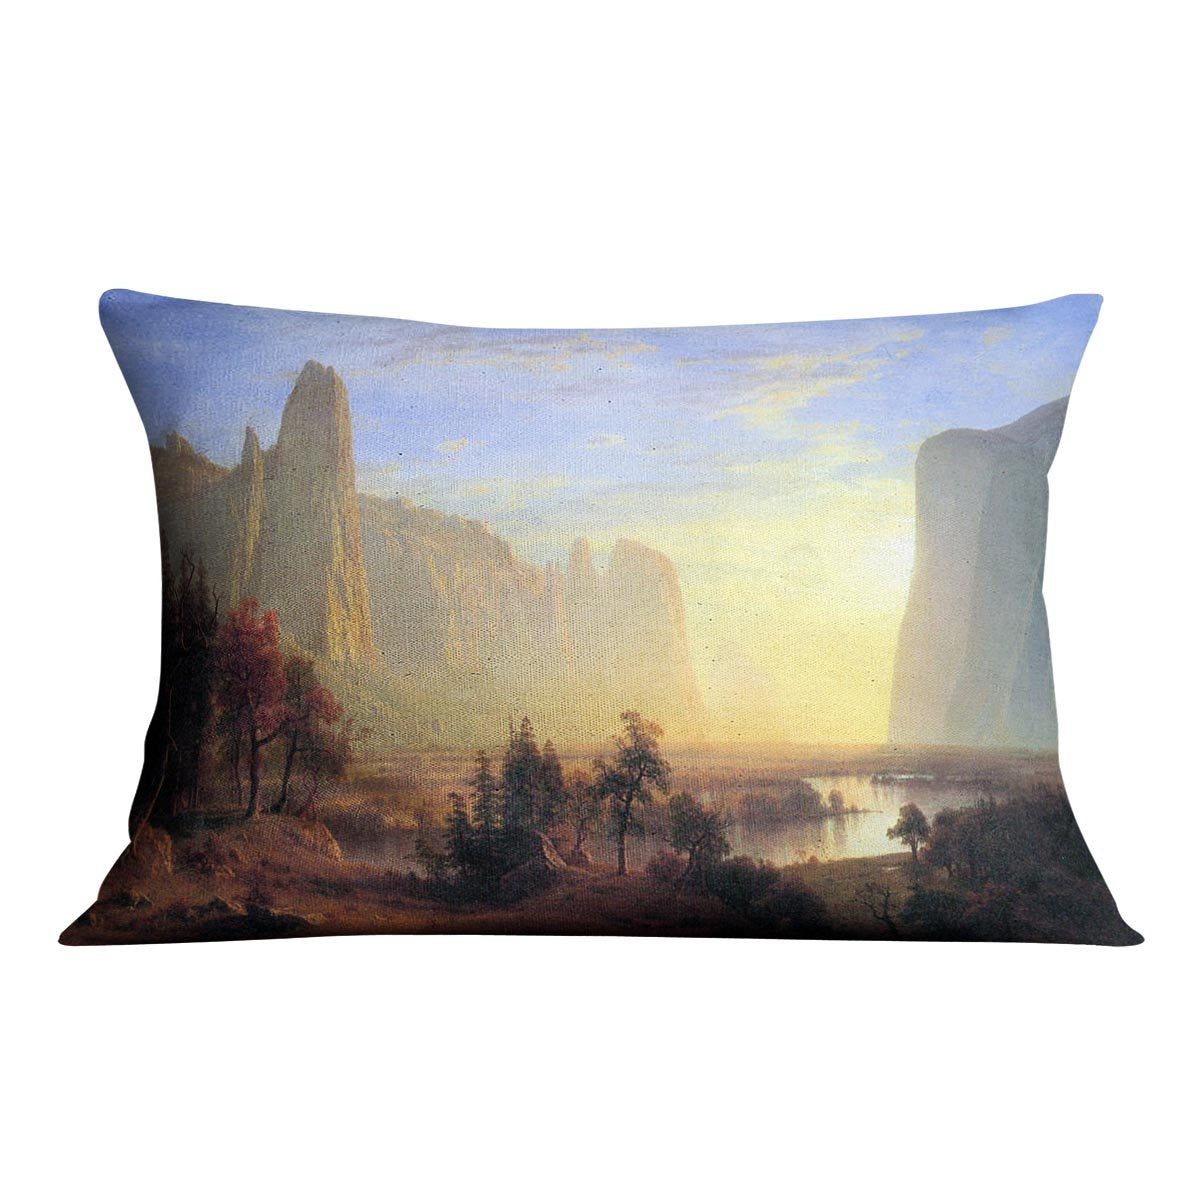 Yosemite Valley by Bierstadt Cushion - Canvas Art Rocks - 4